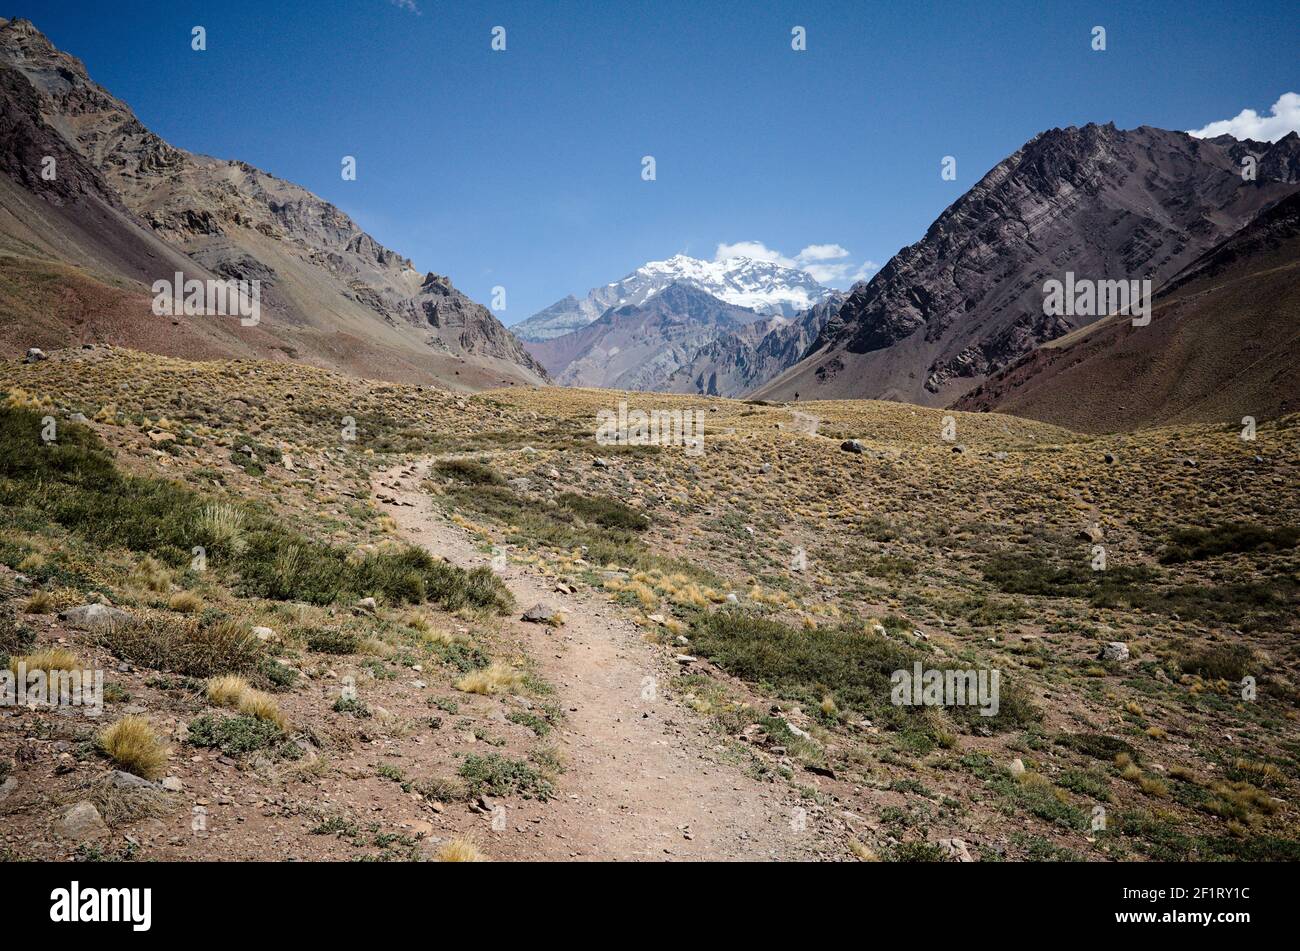 Paesaggio delle Ande con sentieri escursionistici senza persone e vista sul picco Aconcagua. Parco provinciale Aconcagua, provincia di Mendoza, Argentina Foto Stock